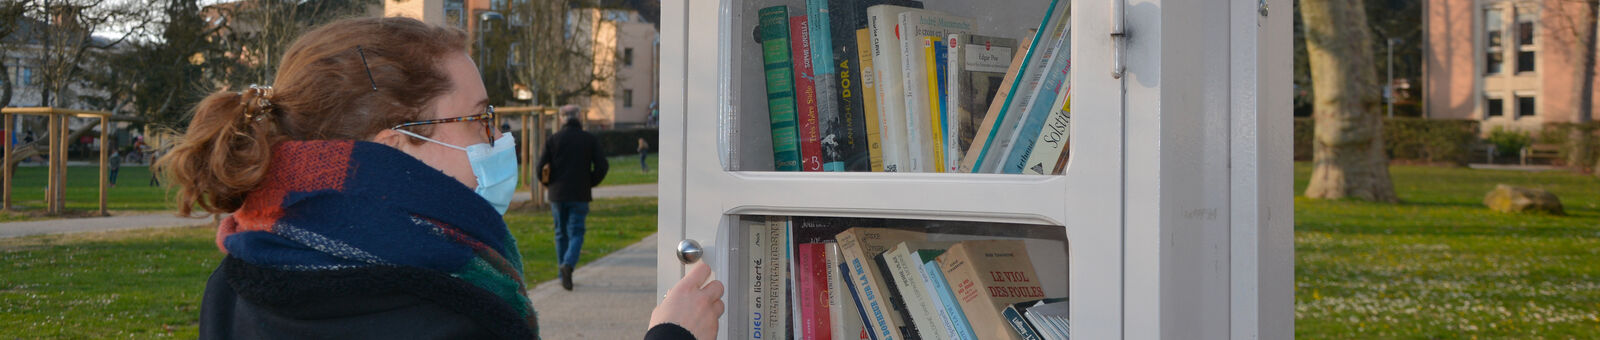 Une femme consulte les ouvrages dans la boîte à livres du centre-ville